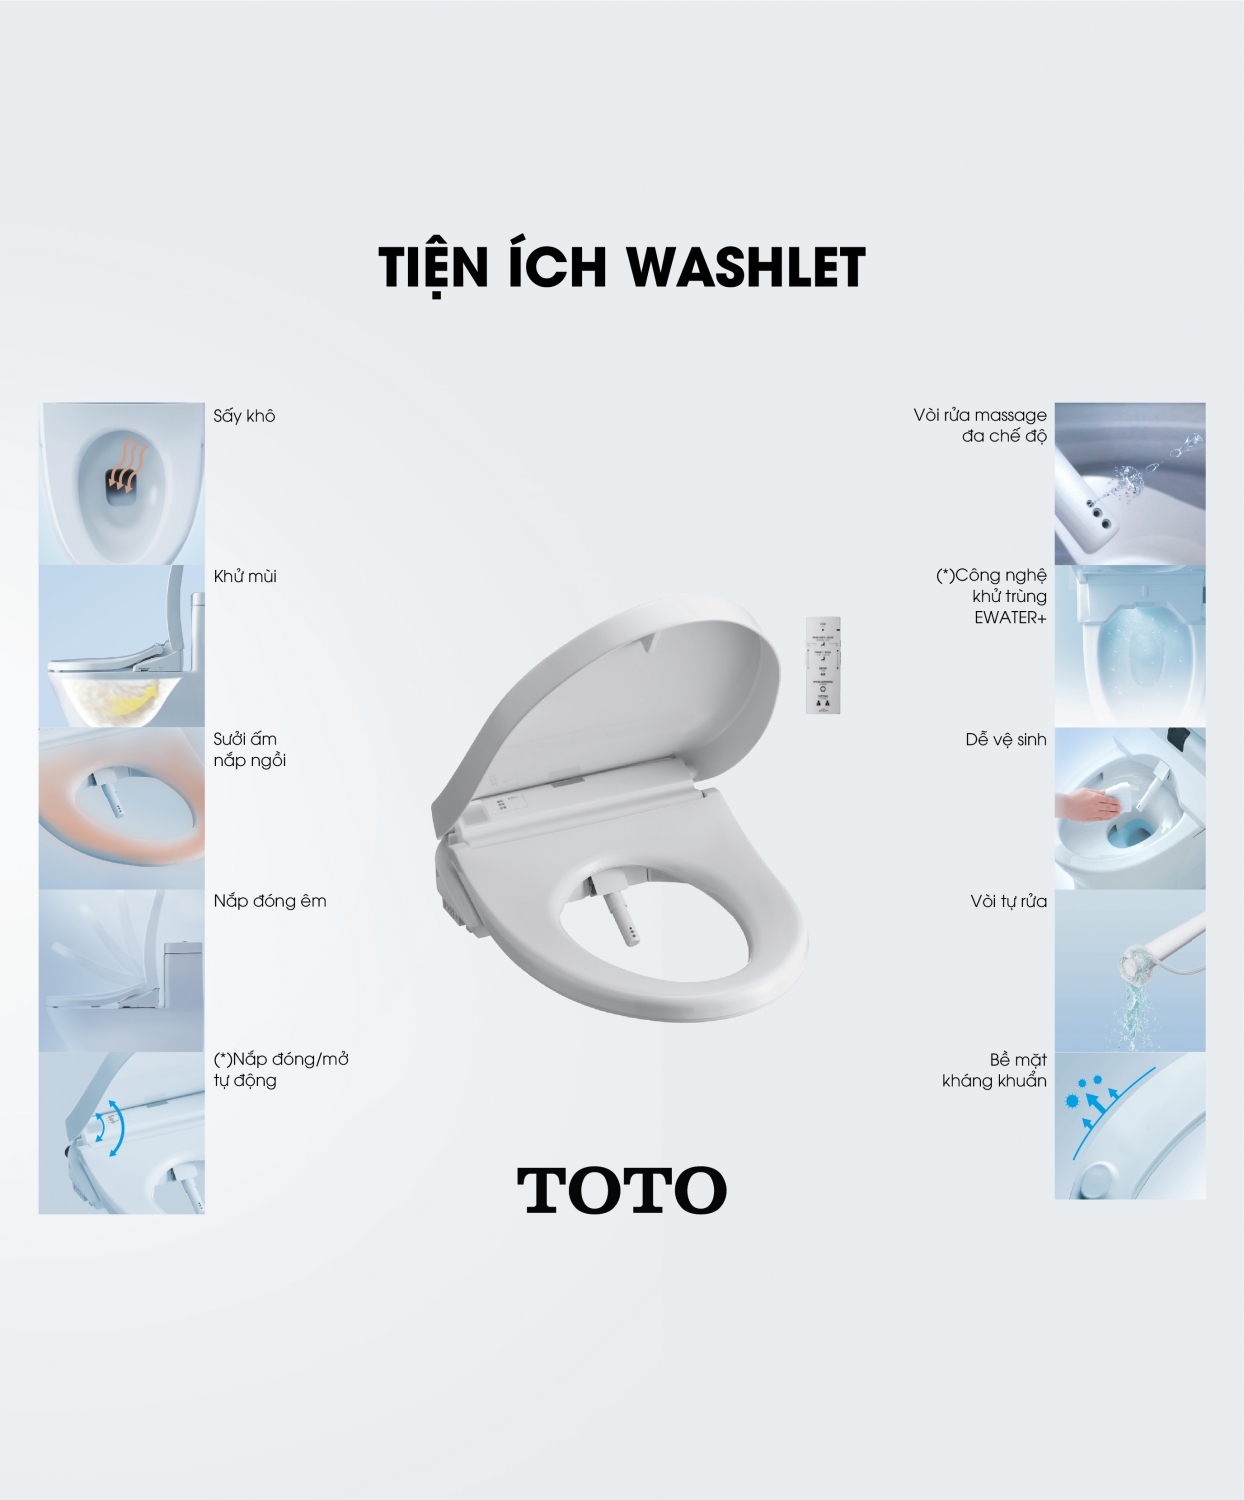 Đang tải toto-washlet-2.jpg…